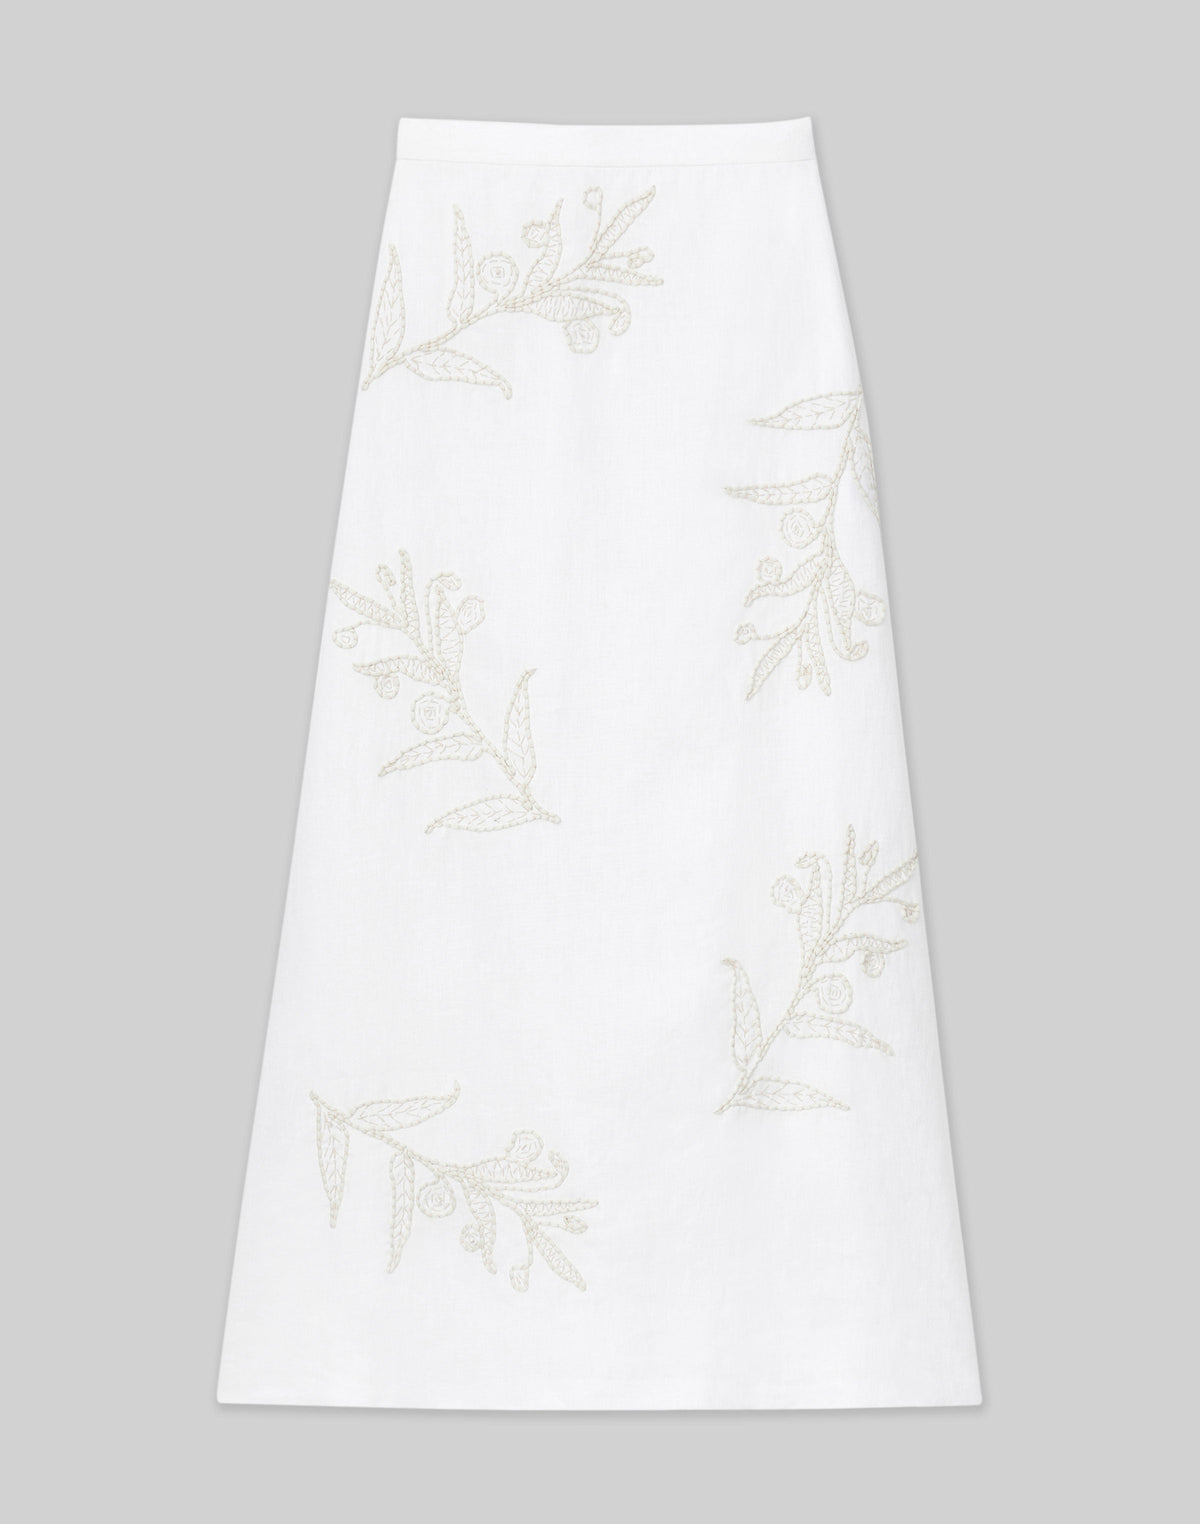 Embroidered Flora Linen Skirt